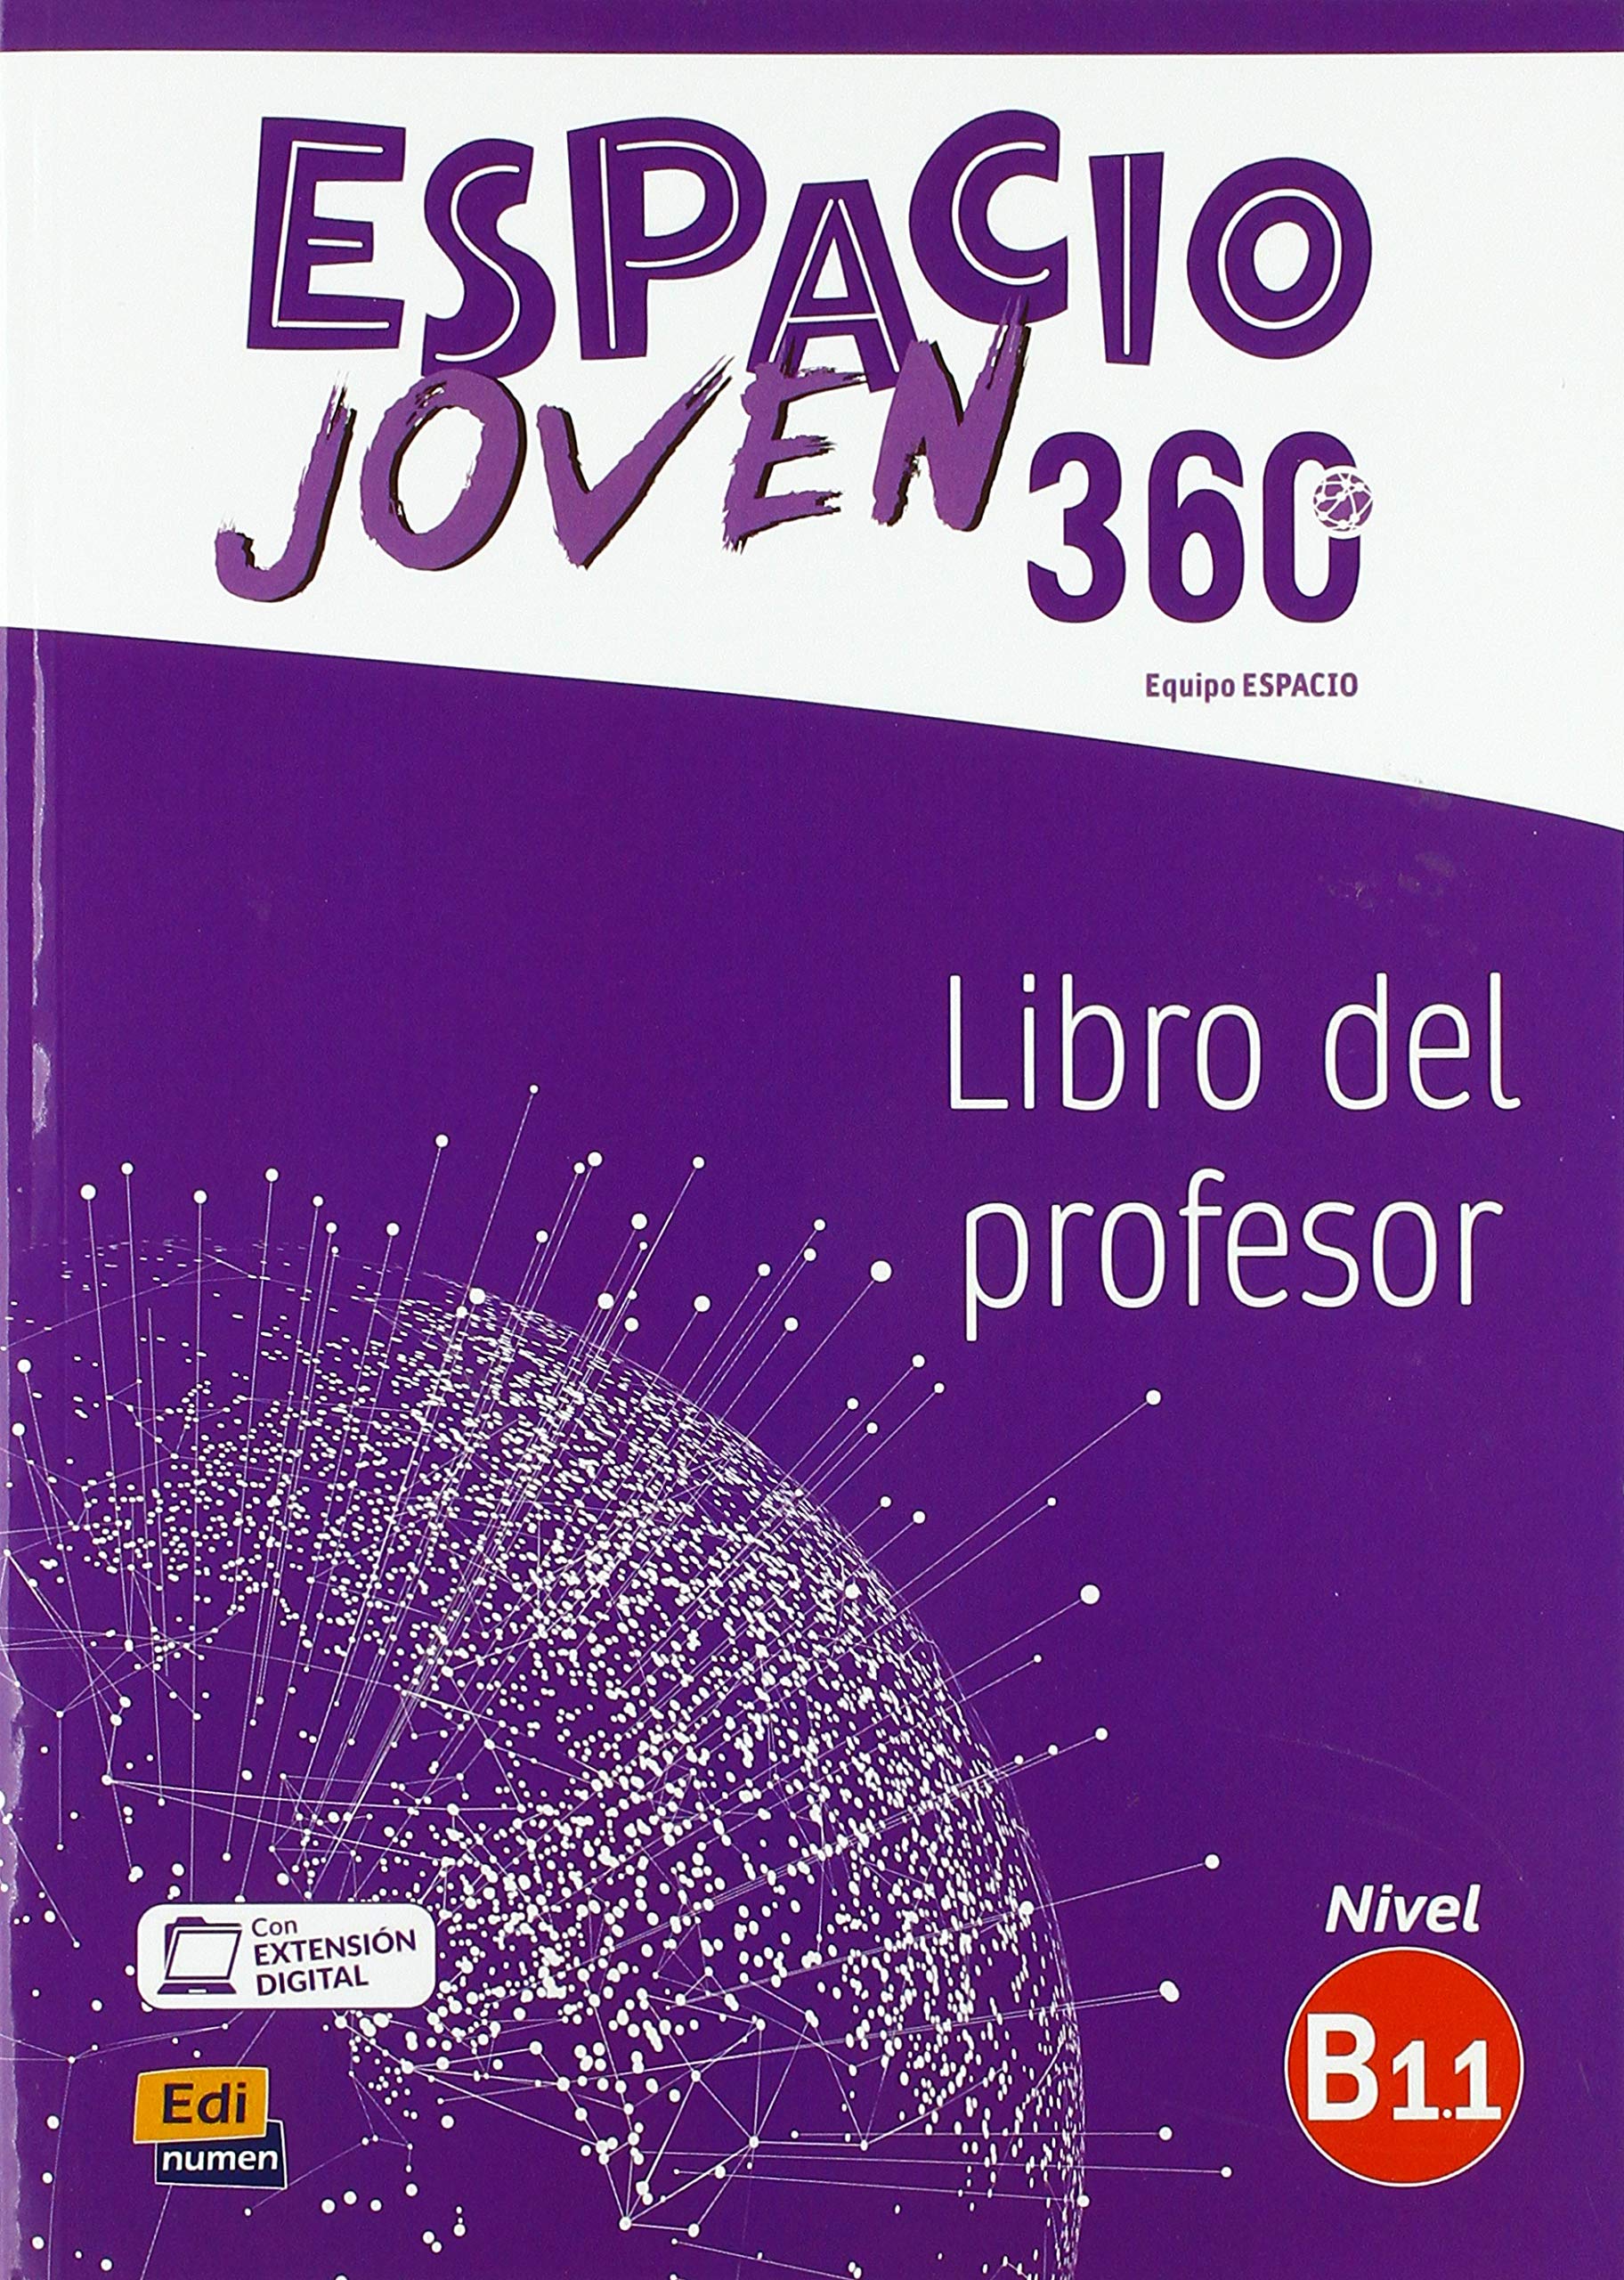 ESPACIO JOVEN 360 Nivel B 1.1 Libro del profesor